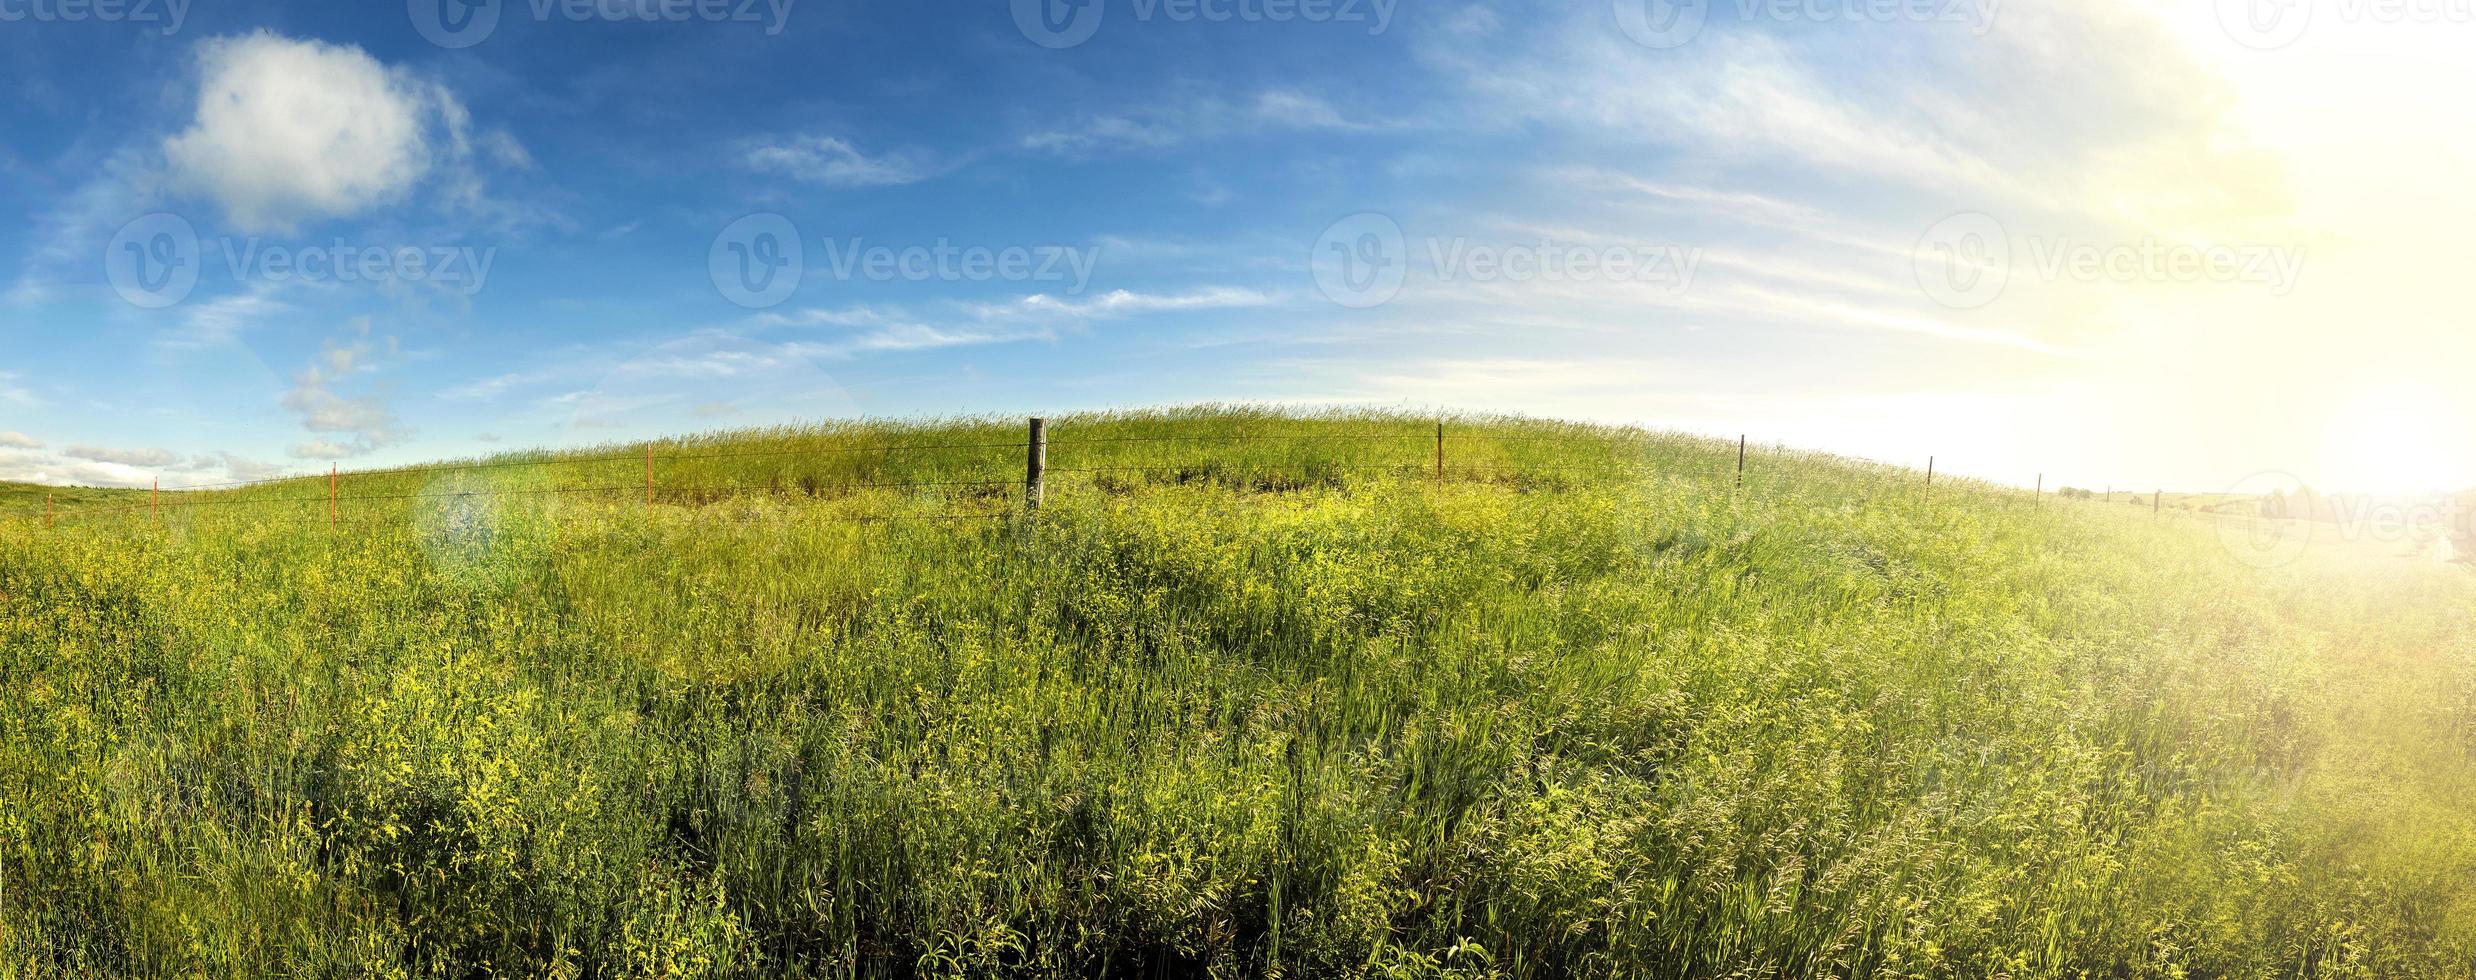 sommardagar, soluppgång på södra dakota gräsland. foto